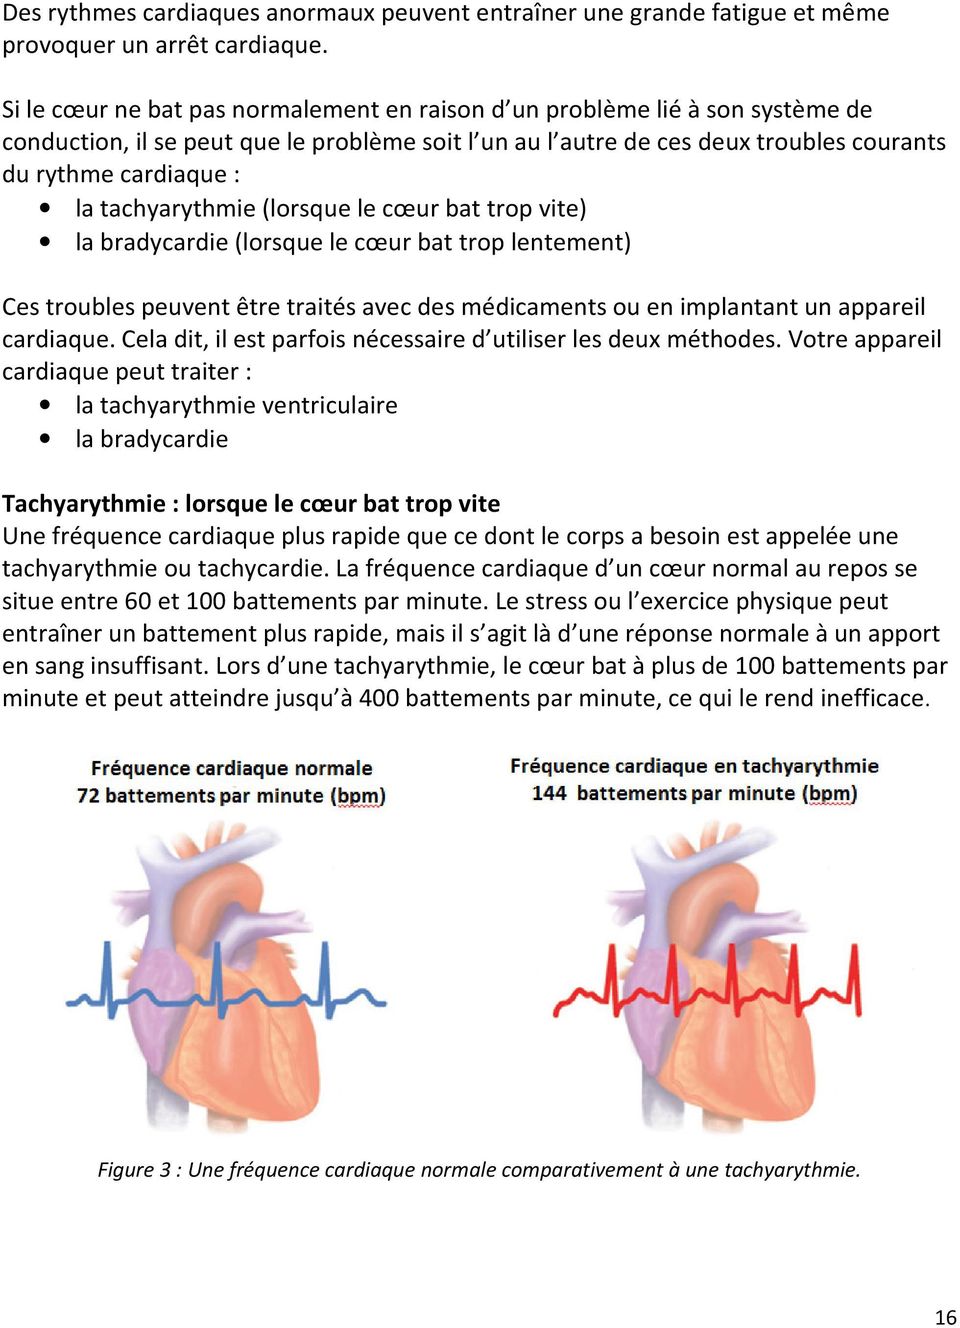 tachyarythmie (lorsque le cœur bat trop vite) la bradycardie (lorsque le cœur bat trop lentement) Ces troubles peuvent être traités avec des médicaments ou en implantant un appareil cardiaque.